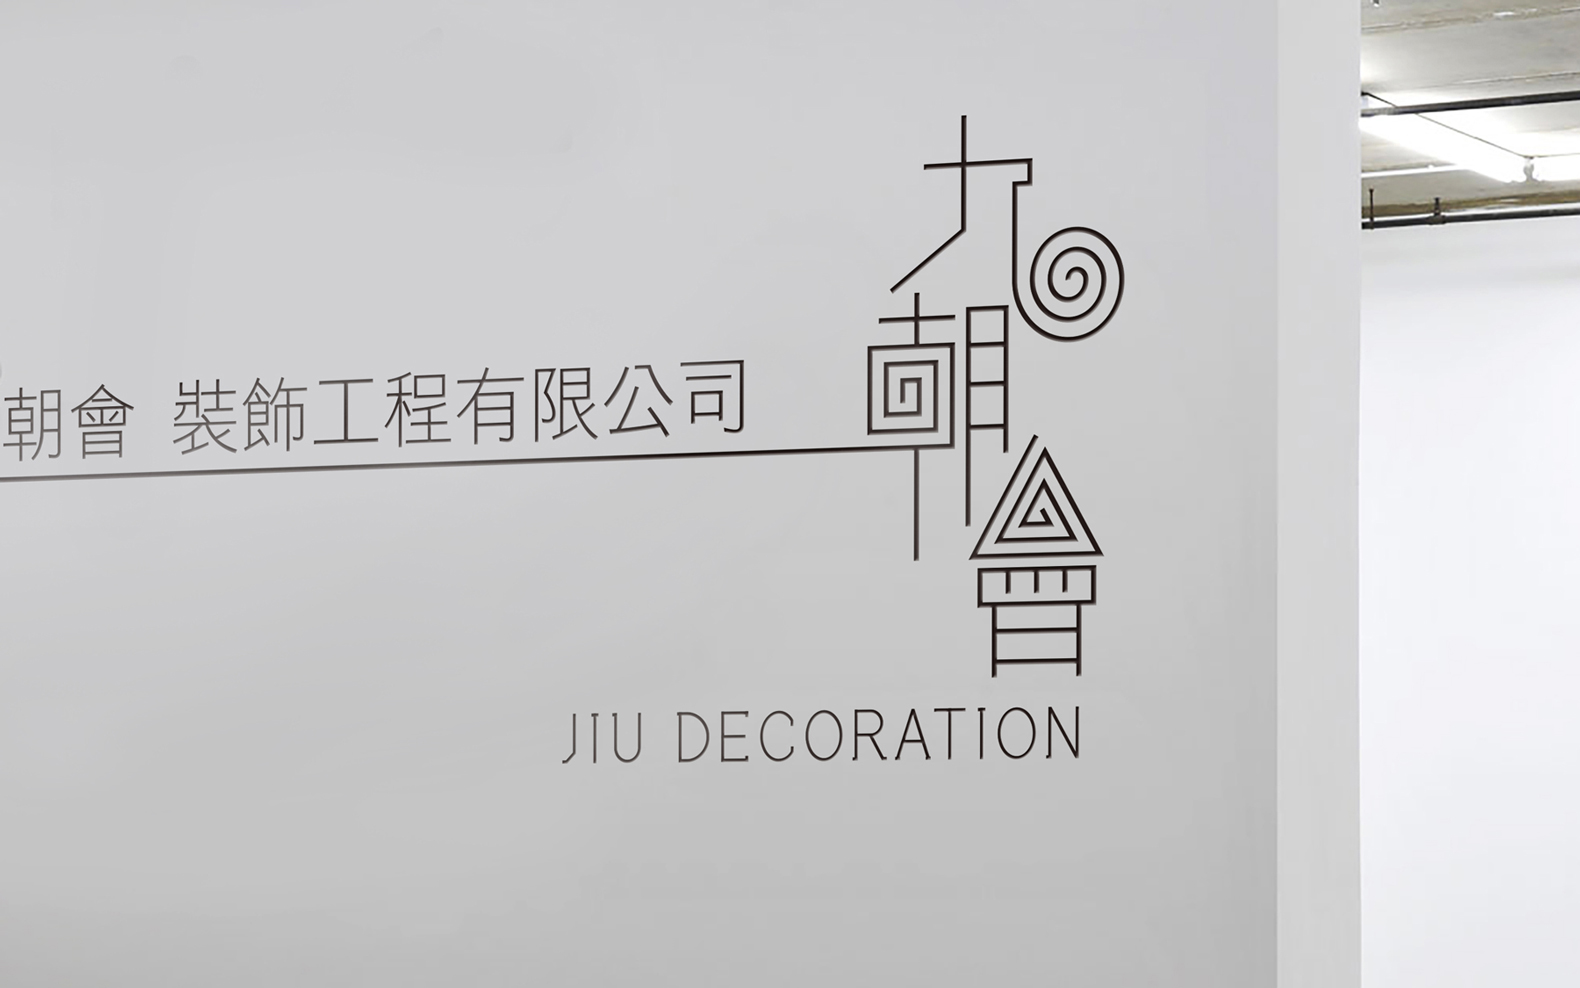 ontata_jiu-decoration_05